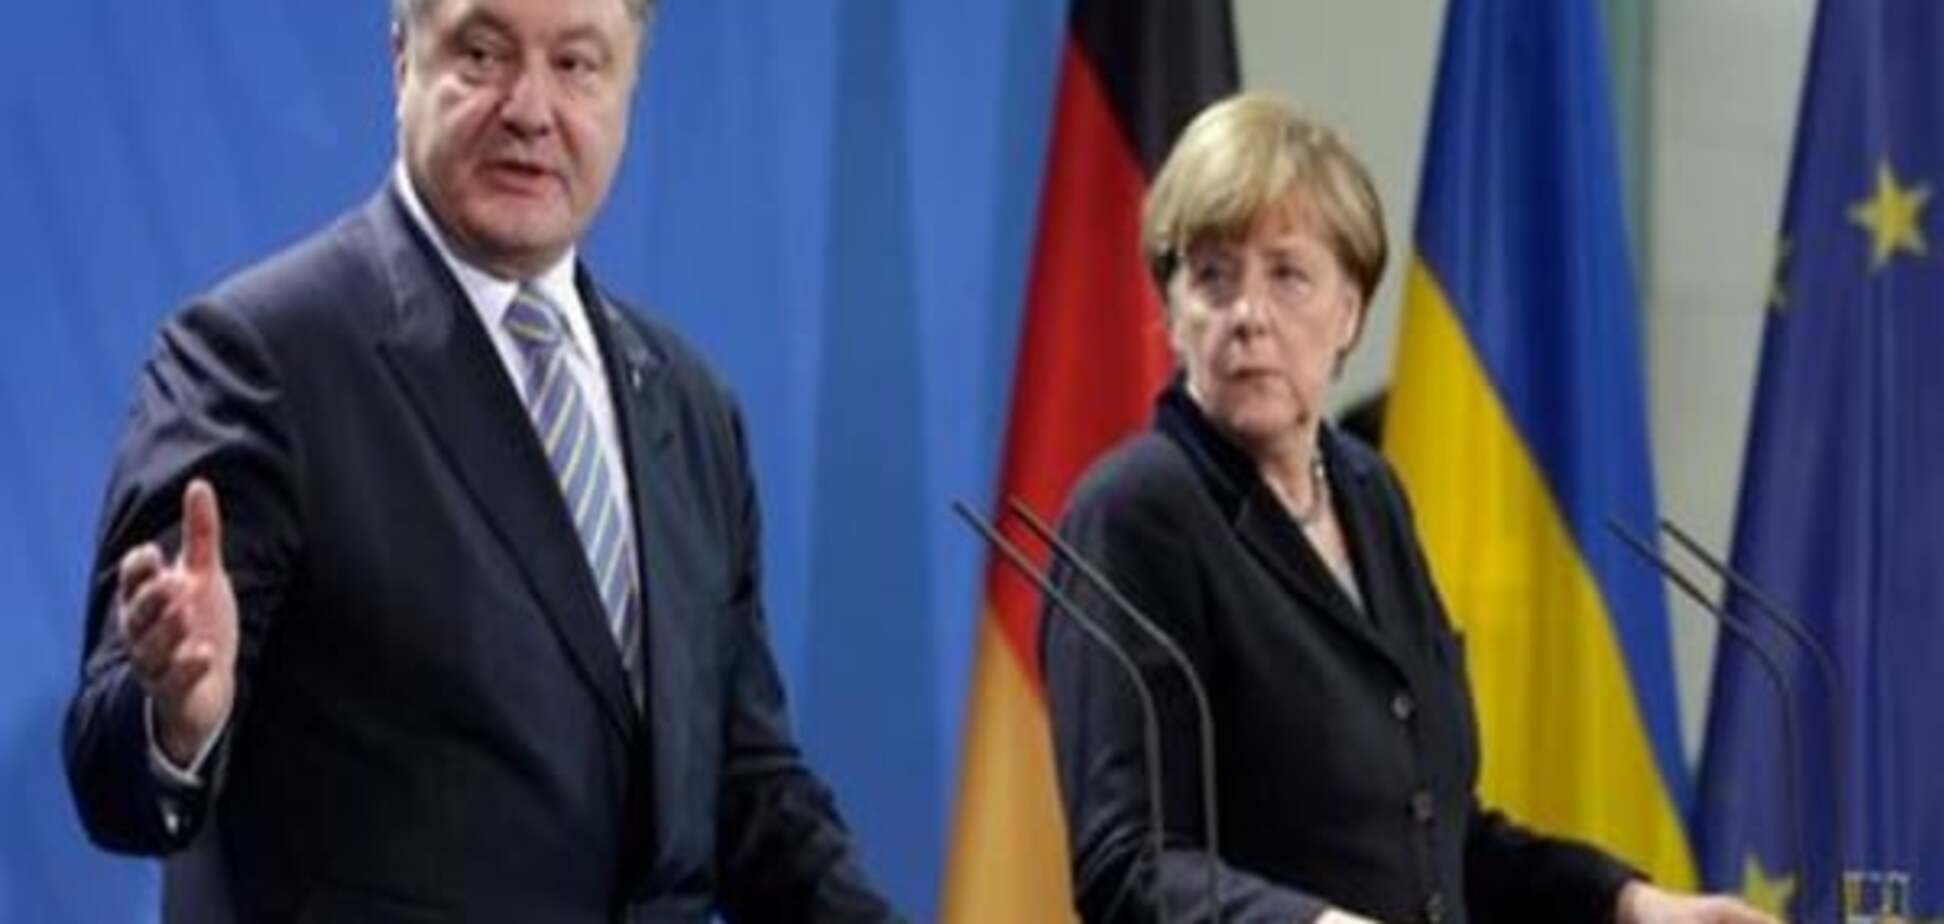 Немецкие СМИ: Порошенко в Берлине - сигнал Москве